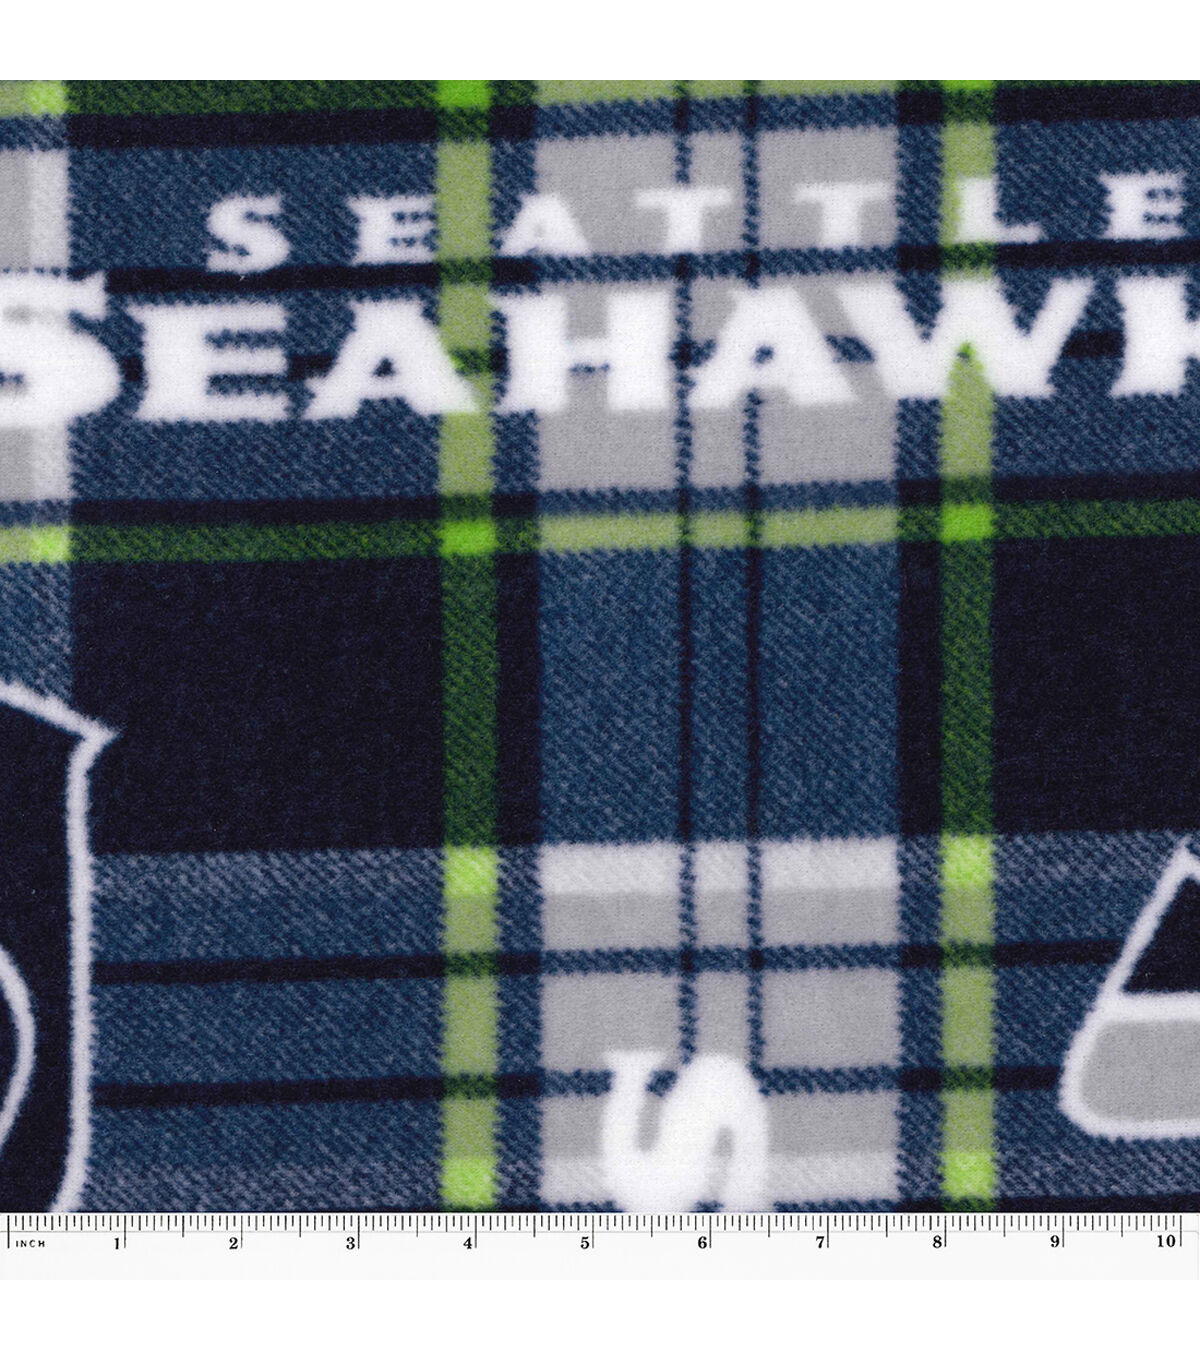 ⏳ - Seattle Seahawks